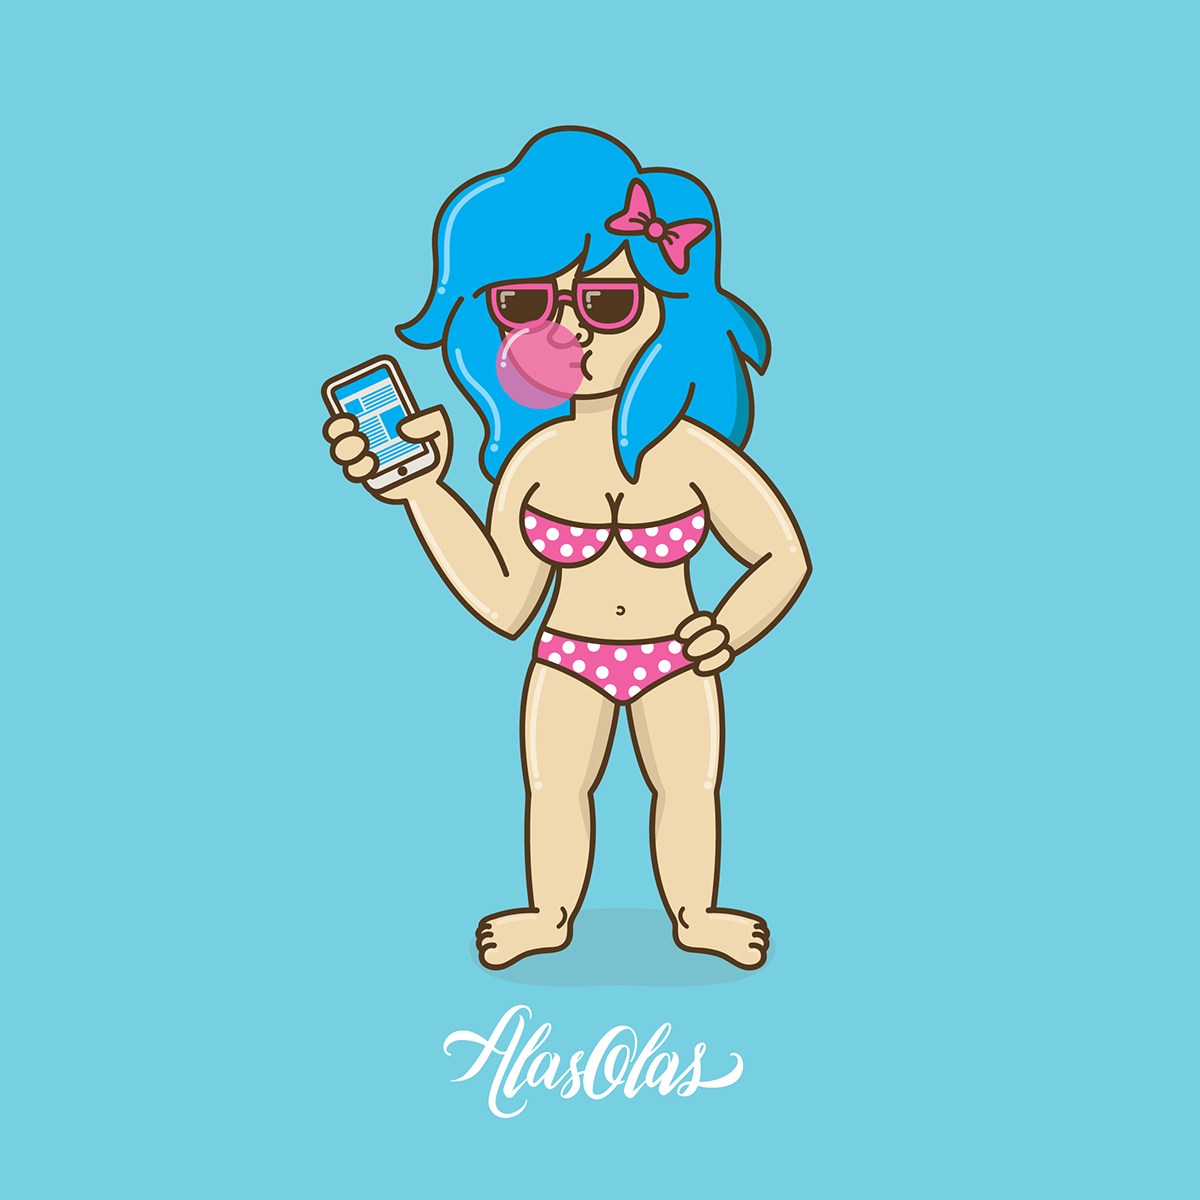 bikini morritas Chicas playa sexy cute vacaciones verano summer